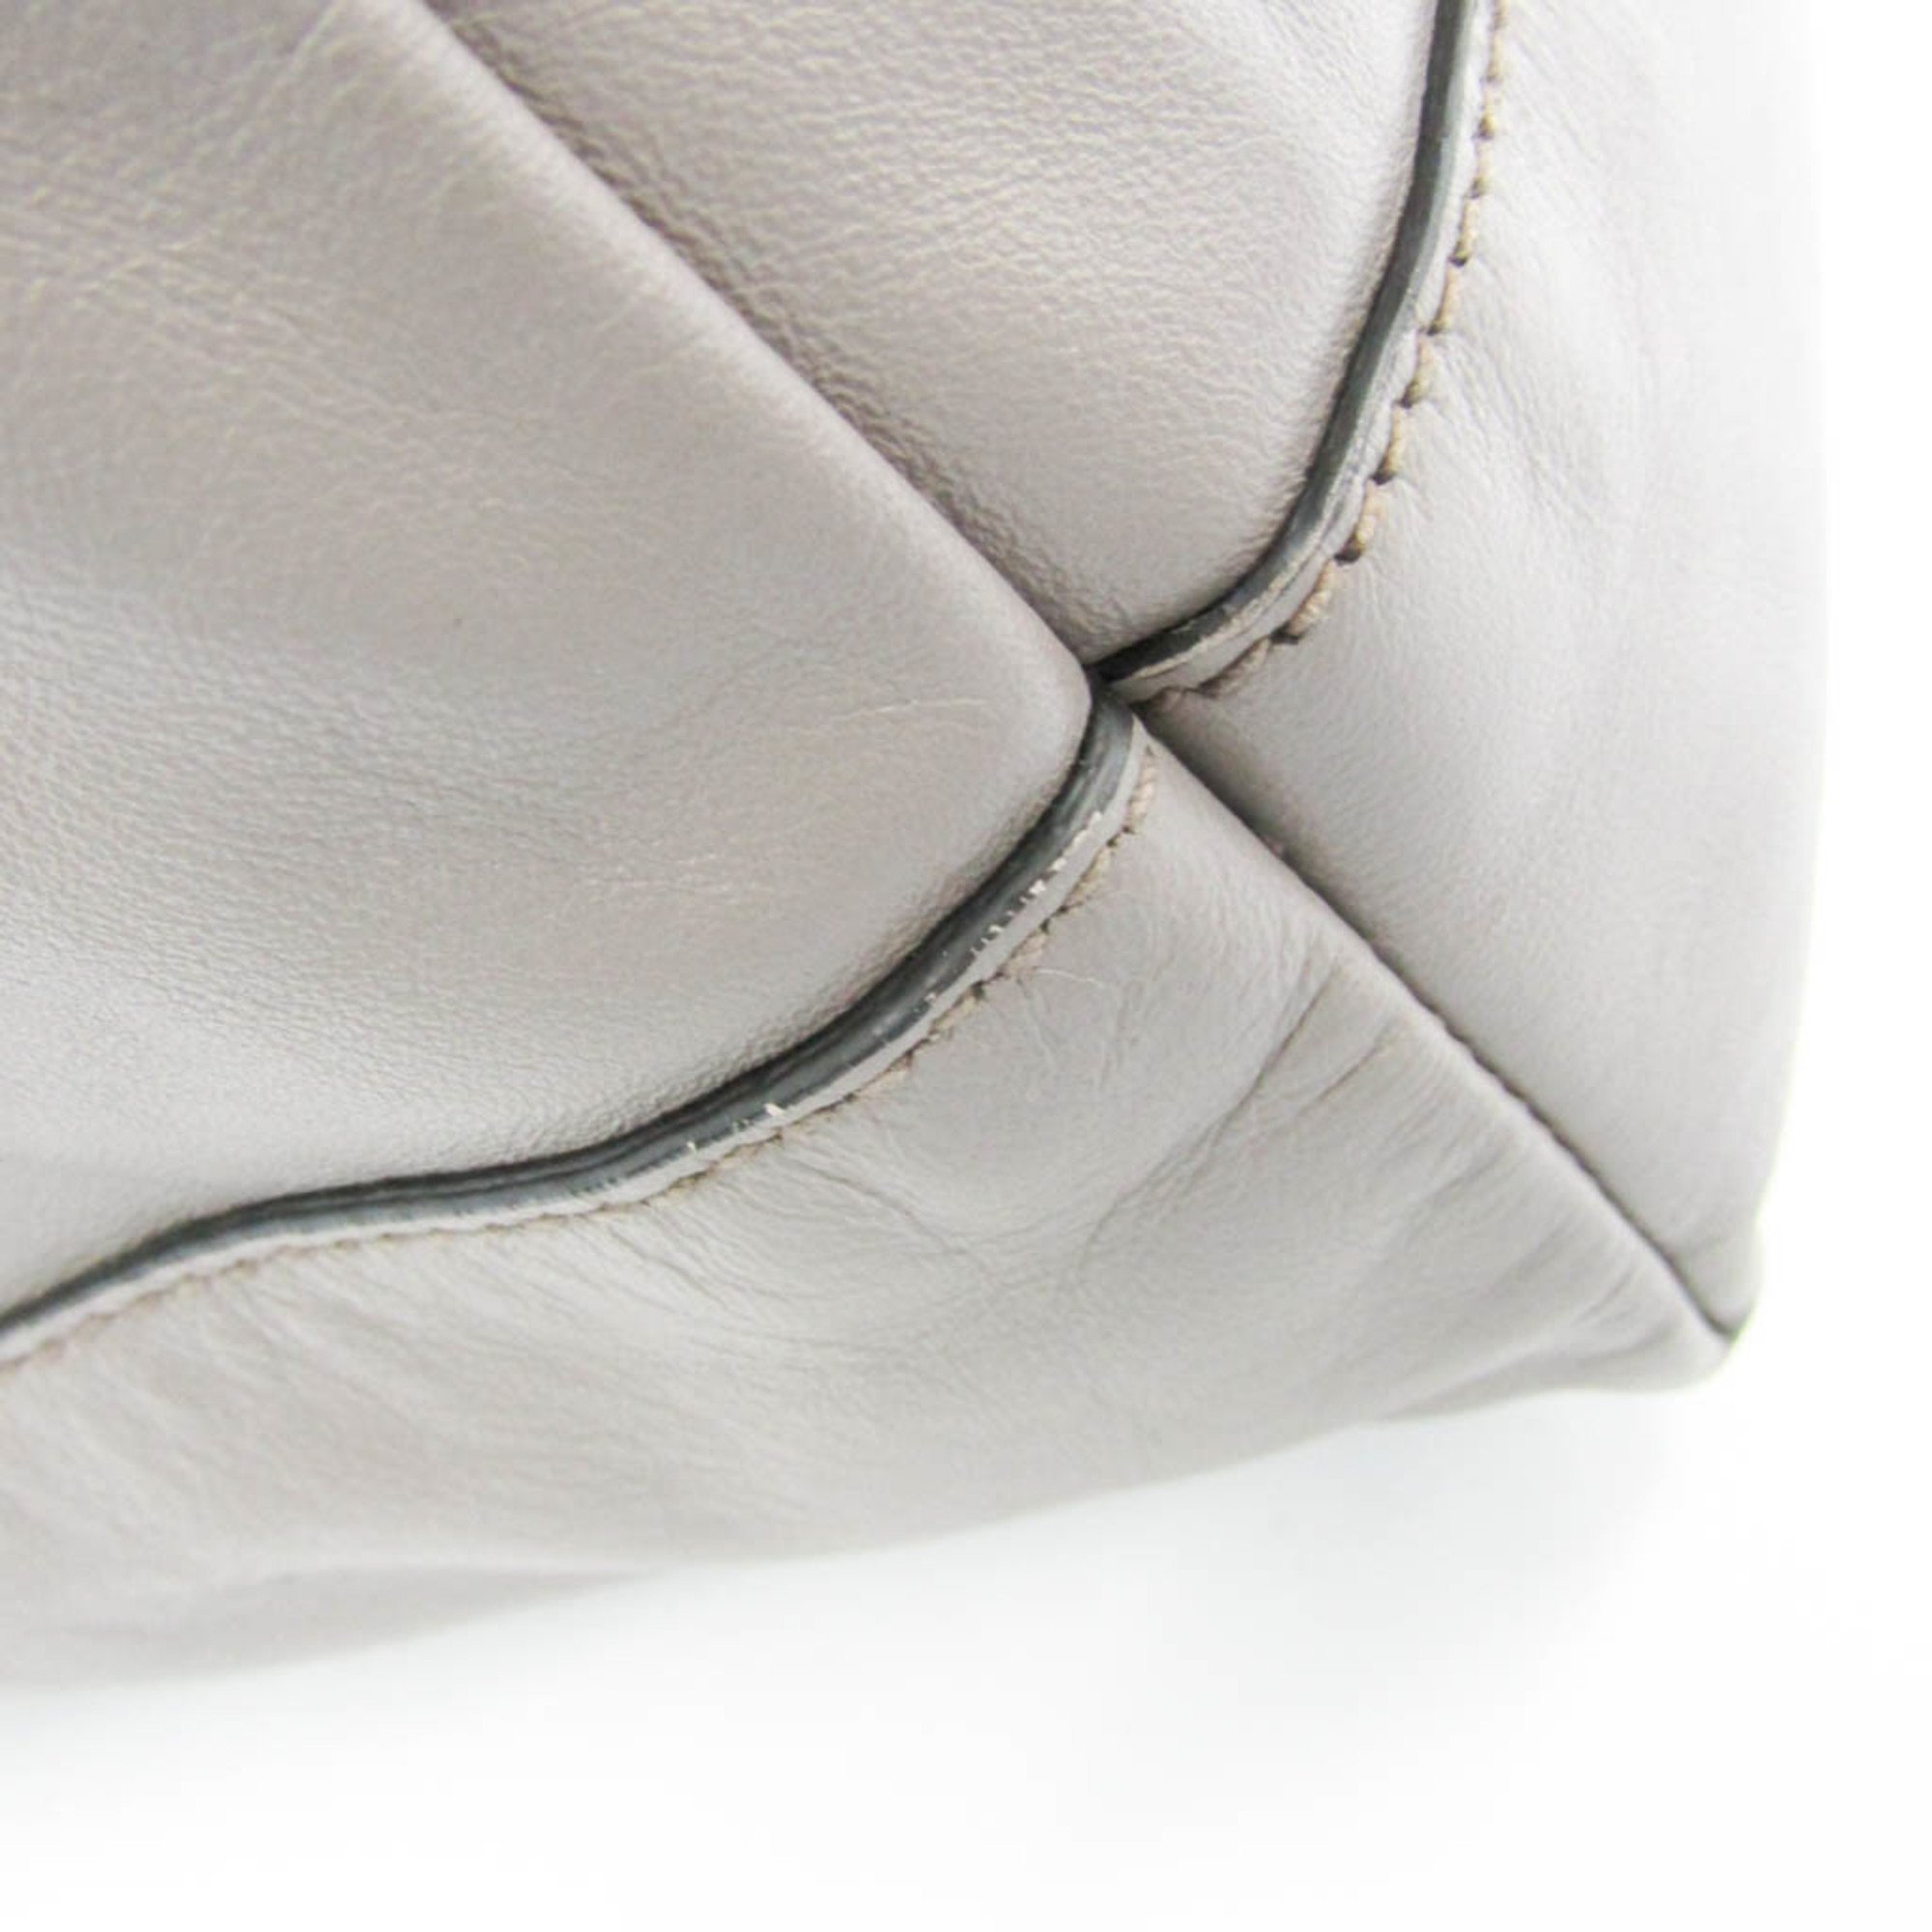 Miu Miu Women's Leather Tote Bag Grayish